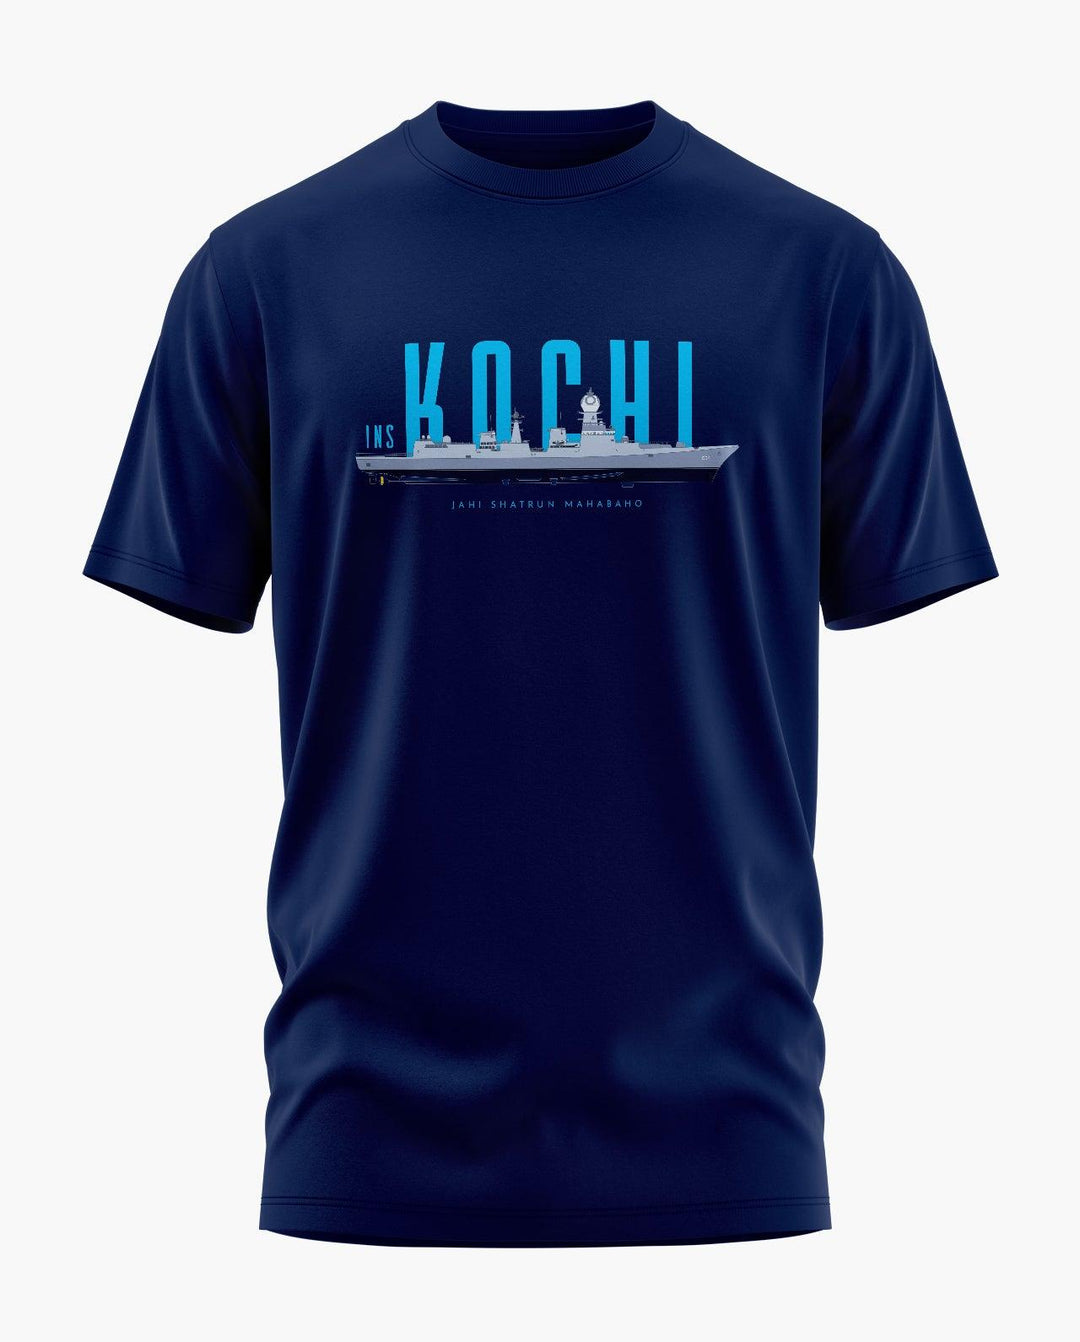 INS Kochi T-Shirt - Aero Armour